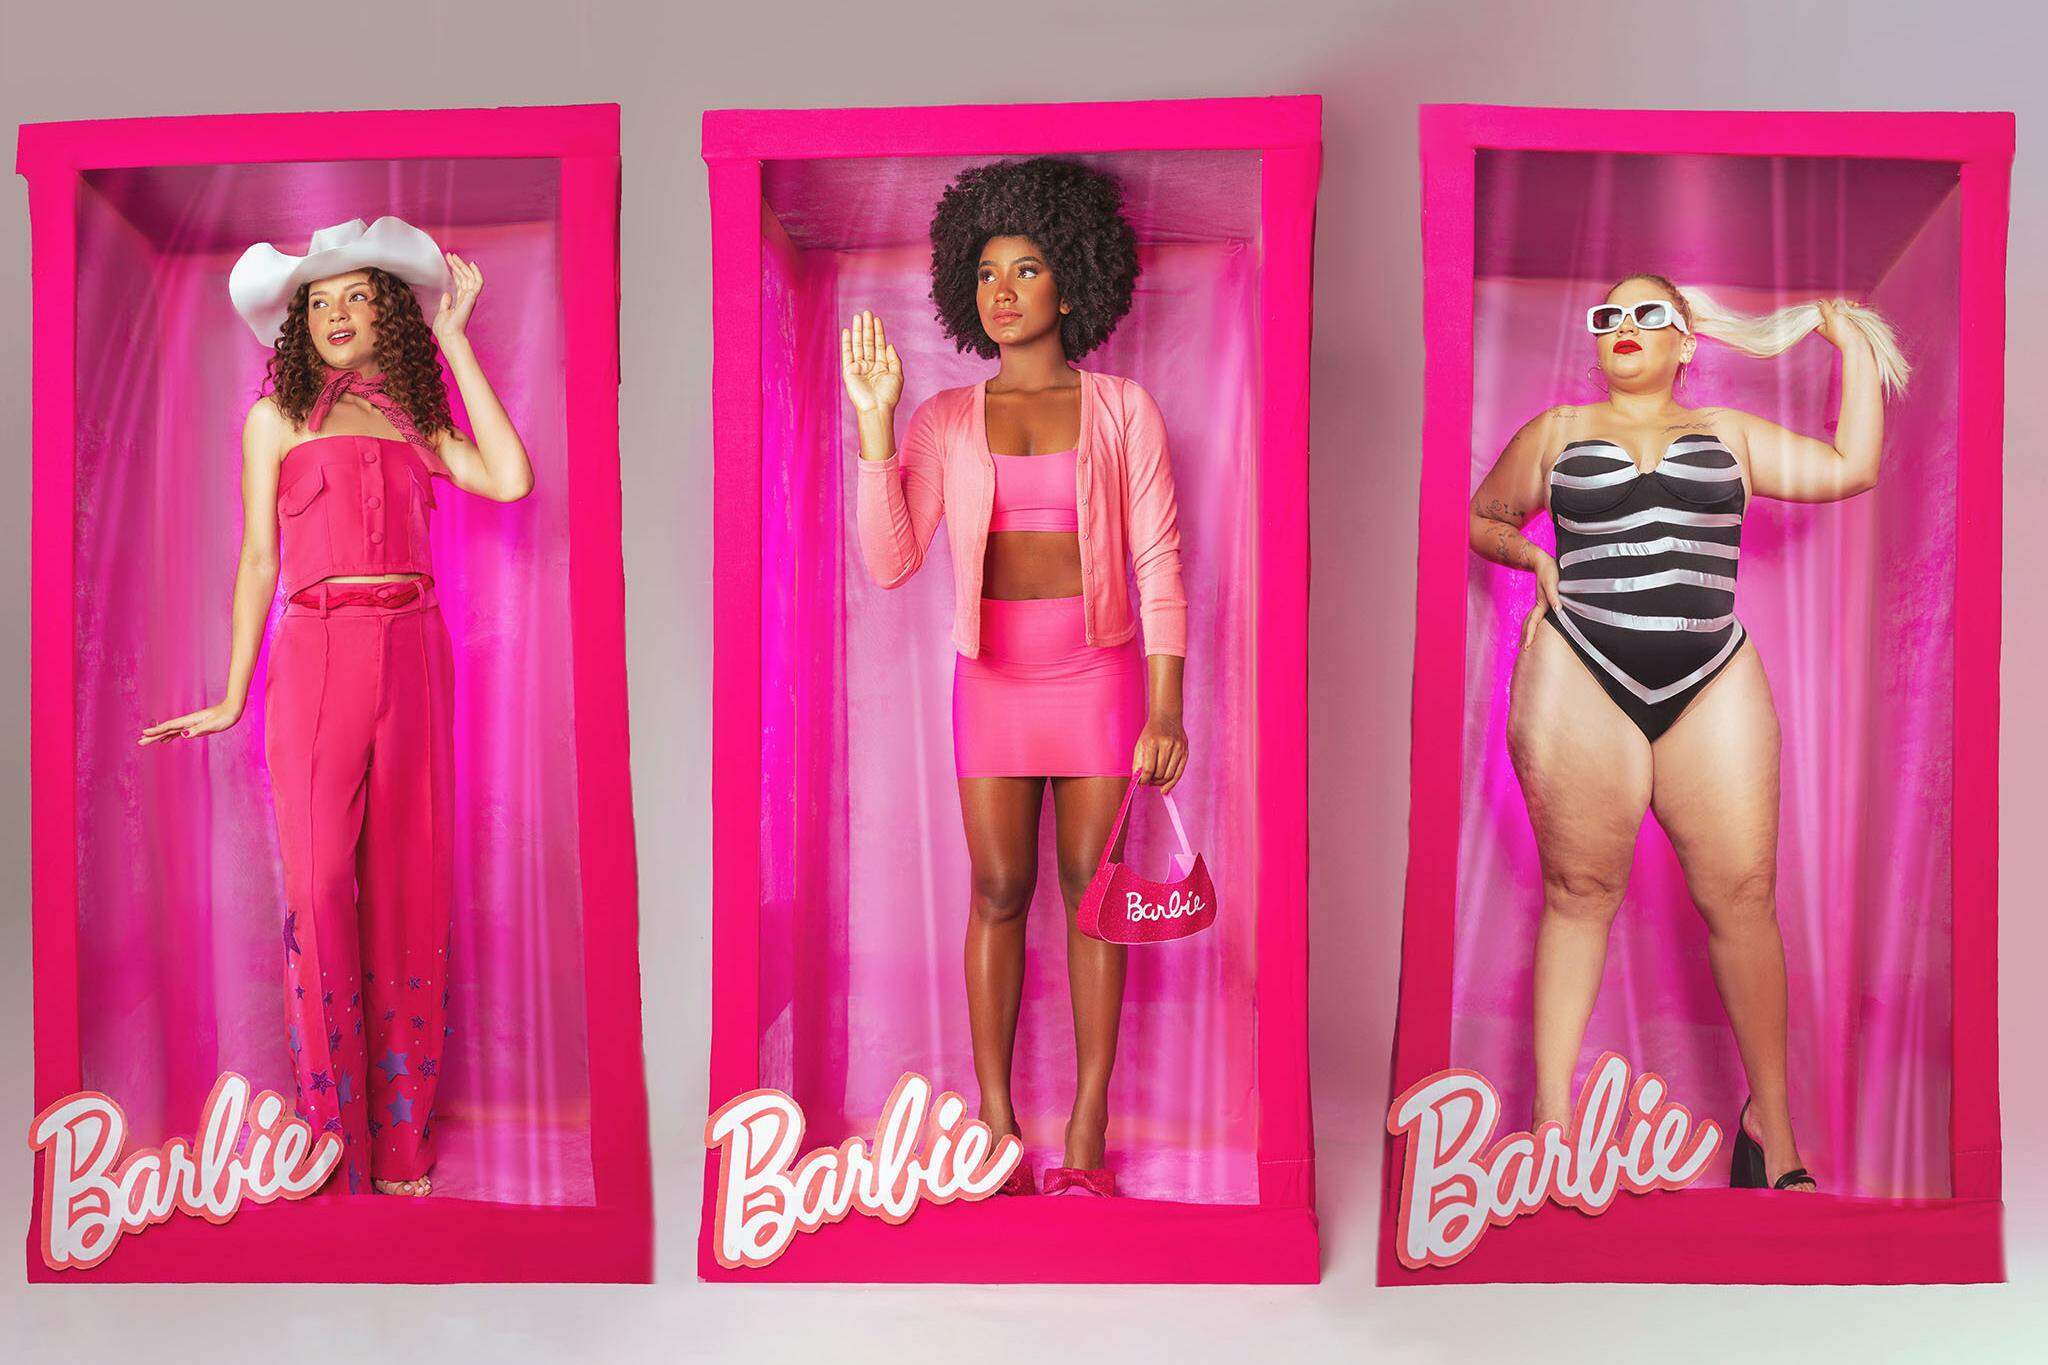 Idosa celebra aniversário com roupa e decoração da Barbie no